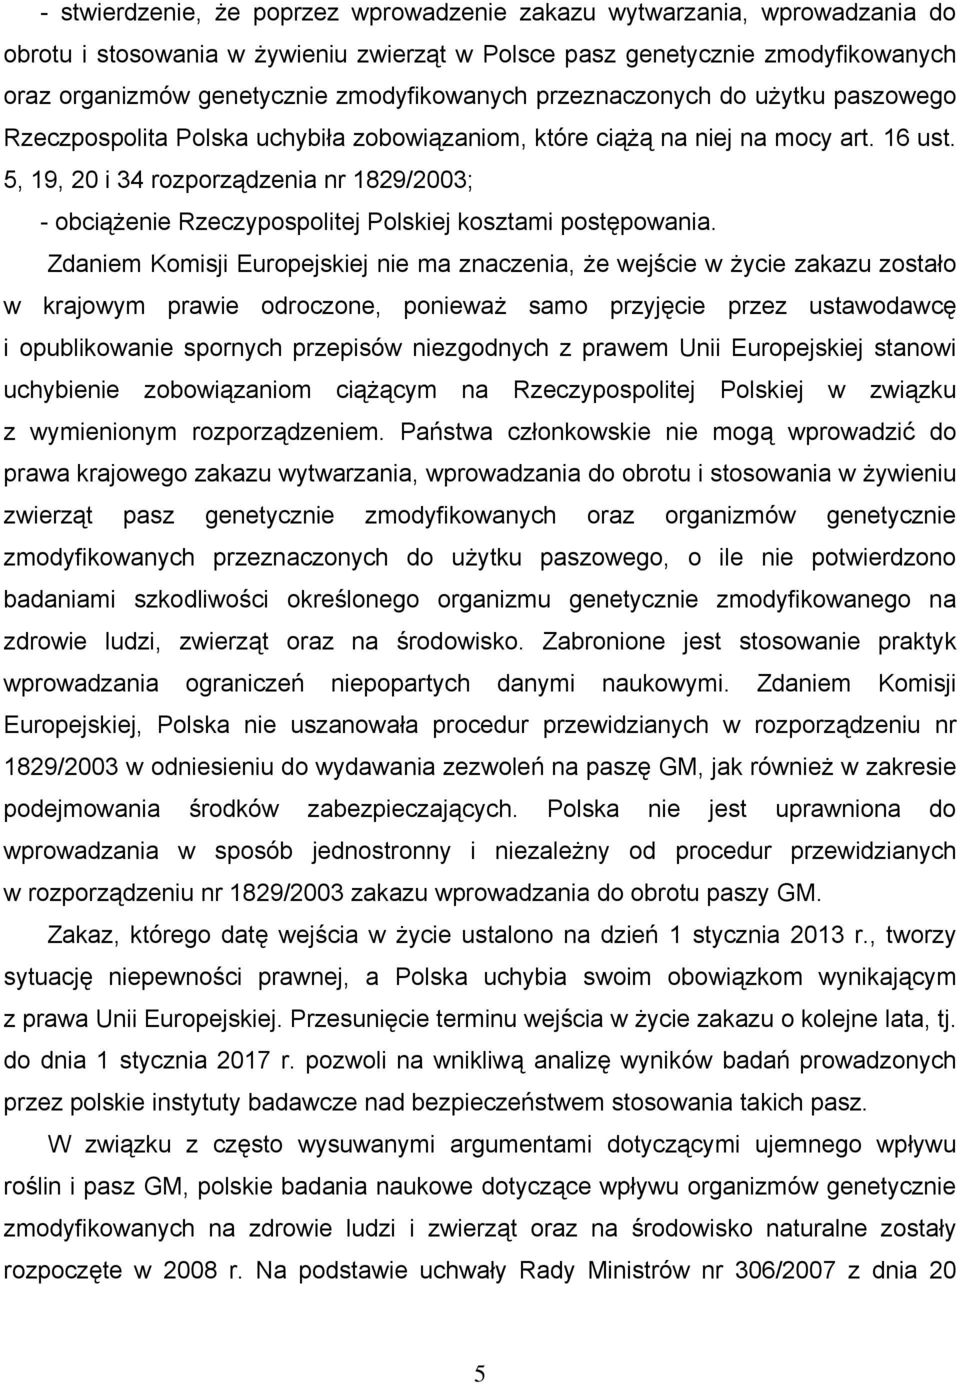 5, 19, 20 i 34 rozporządzenia nr 1829/2003; - obciążenie Rzeczypospolitej Polskiej kosztami postępowania.